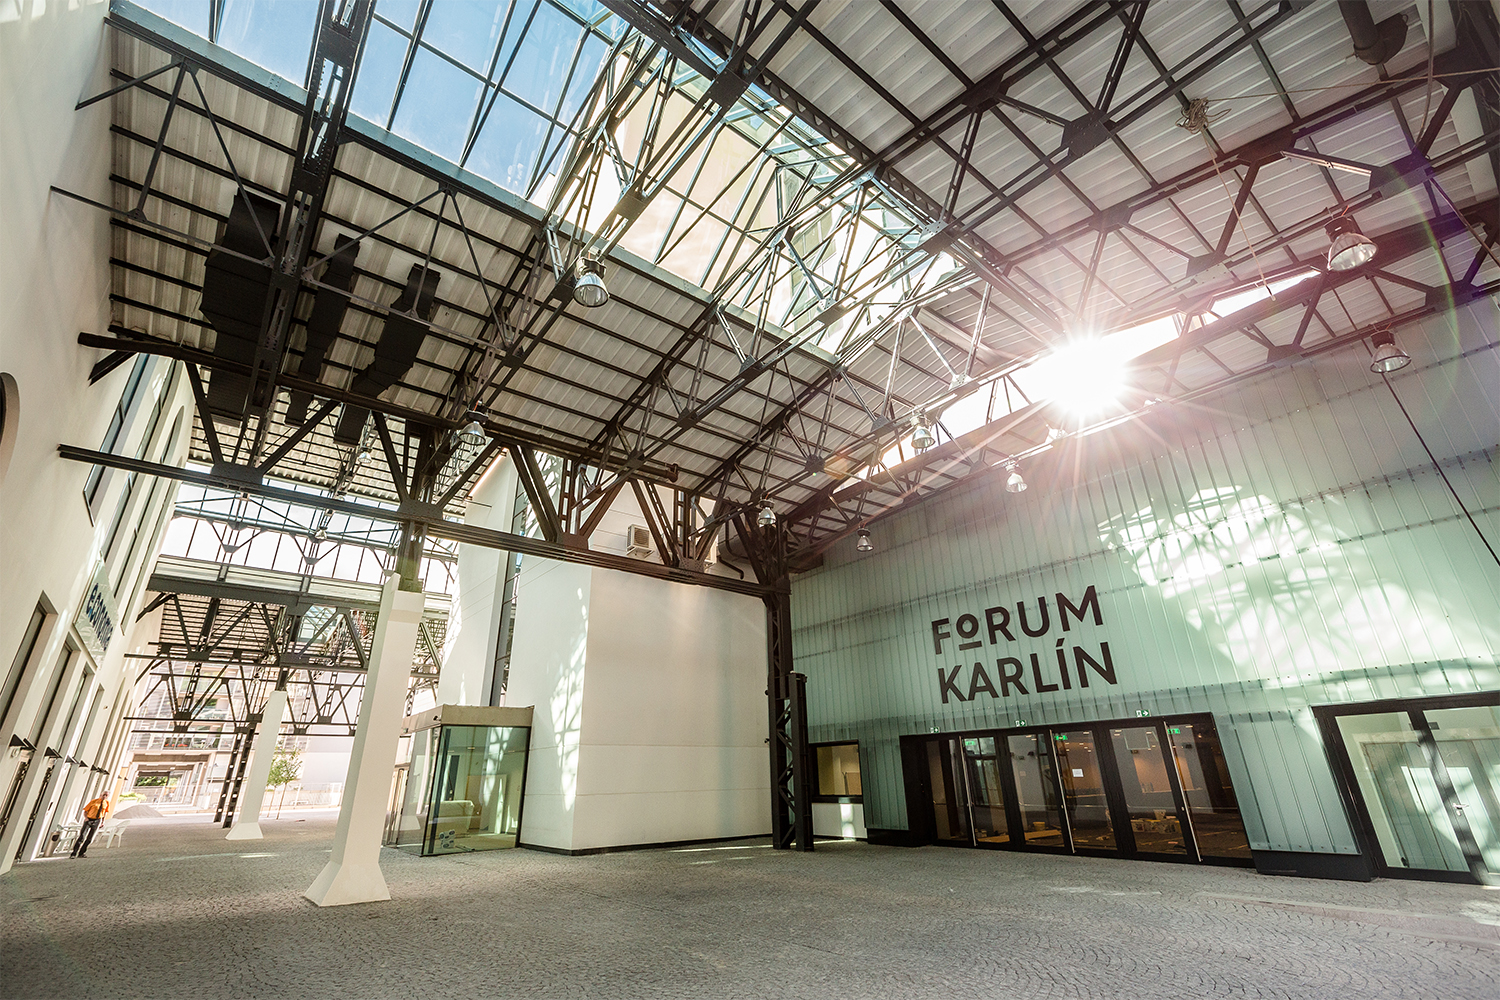 Interier sa nachádza v továrenskej hale, ktorá je dnes súčásťou komplexu Forum Karlín v Prahe. Autorom citlivej rekonštrukcie industriálnej budovy bývalej prvorepublikovej fabriky je Ricardo Bofill.